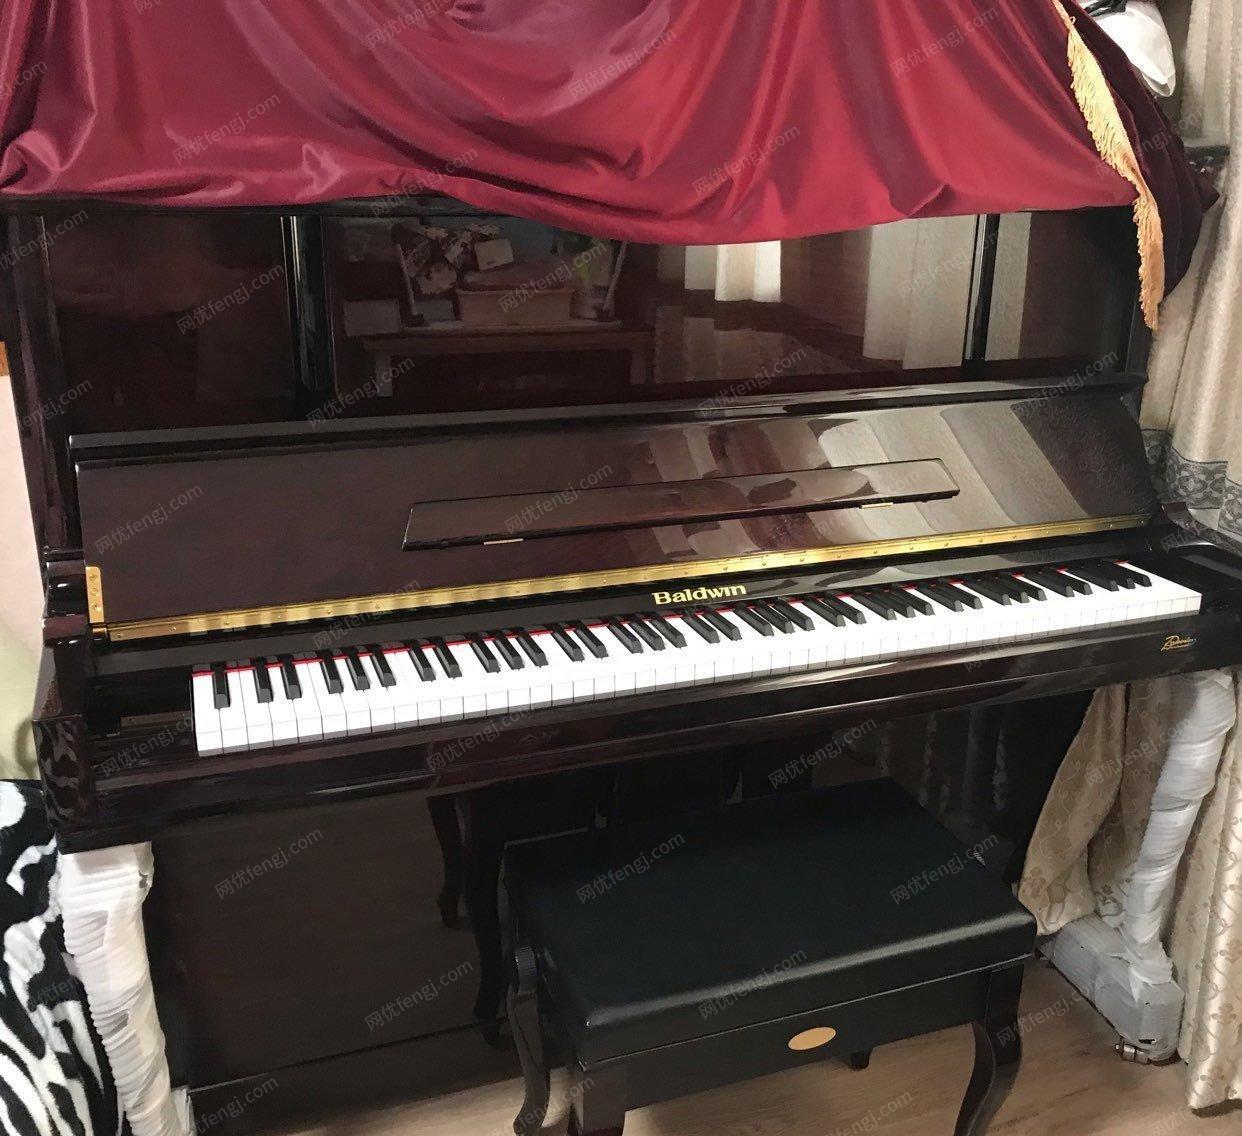 河南焦作出售鲍德温钢琴。没有磕碰划痕